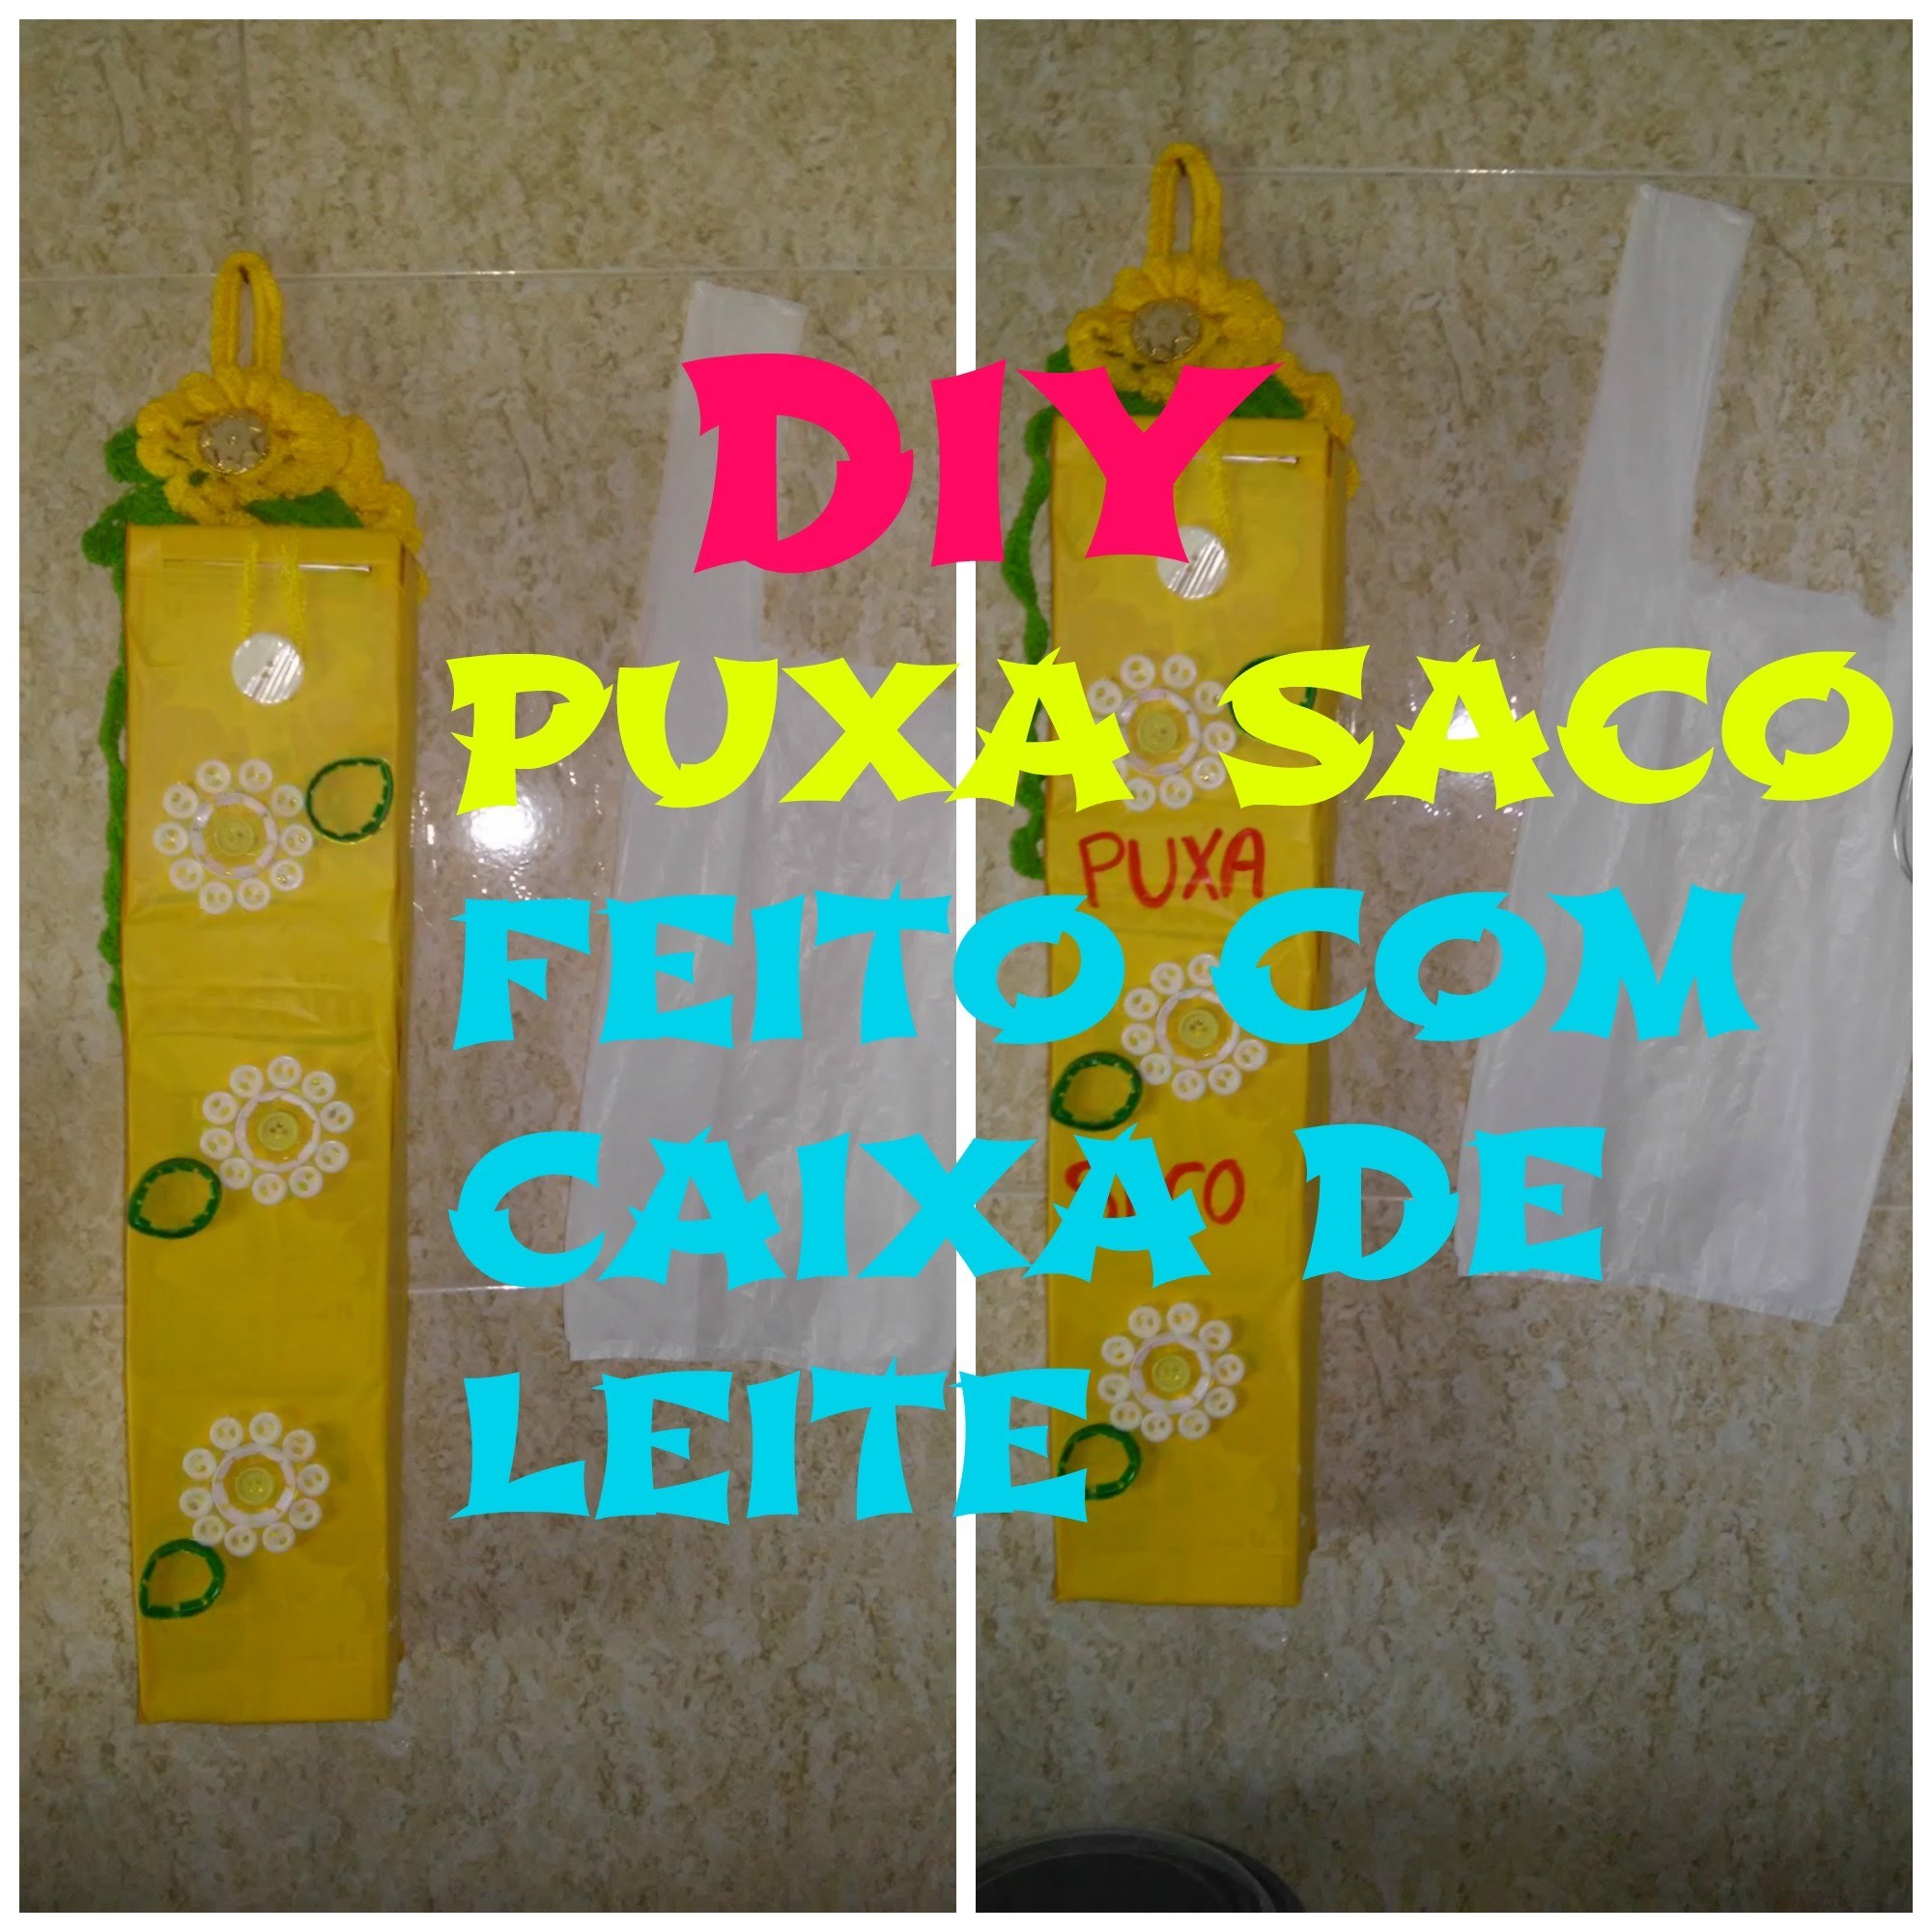 DIY- PUXA SACO FEITO COM CAIXAS DE LEITE